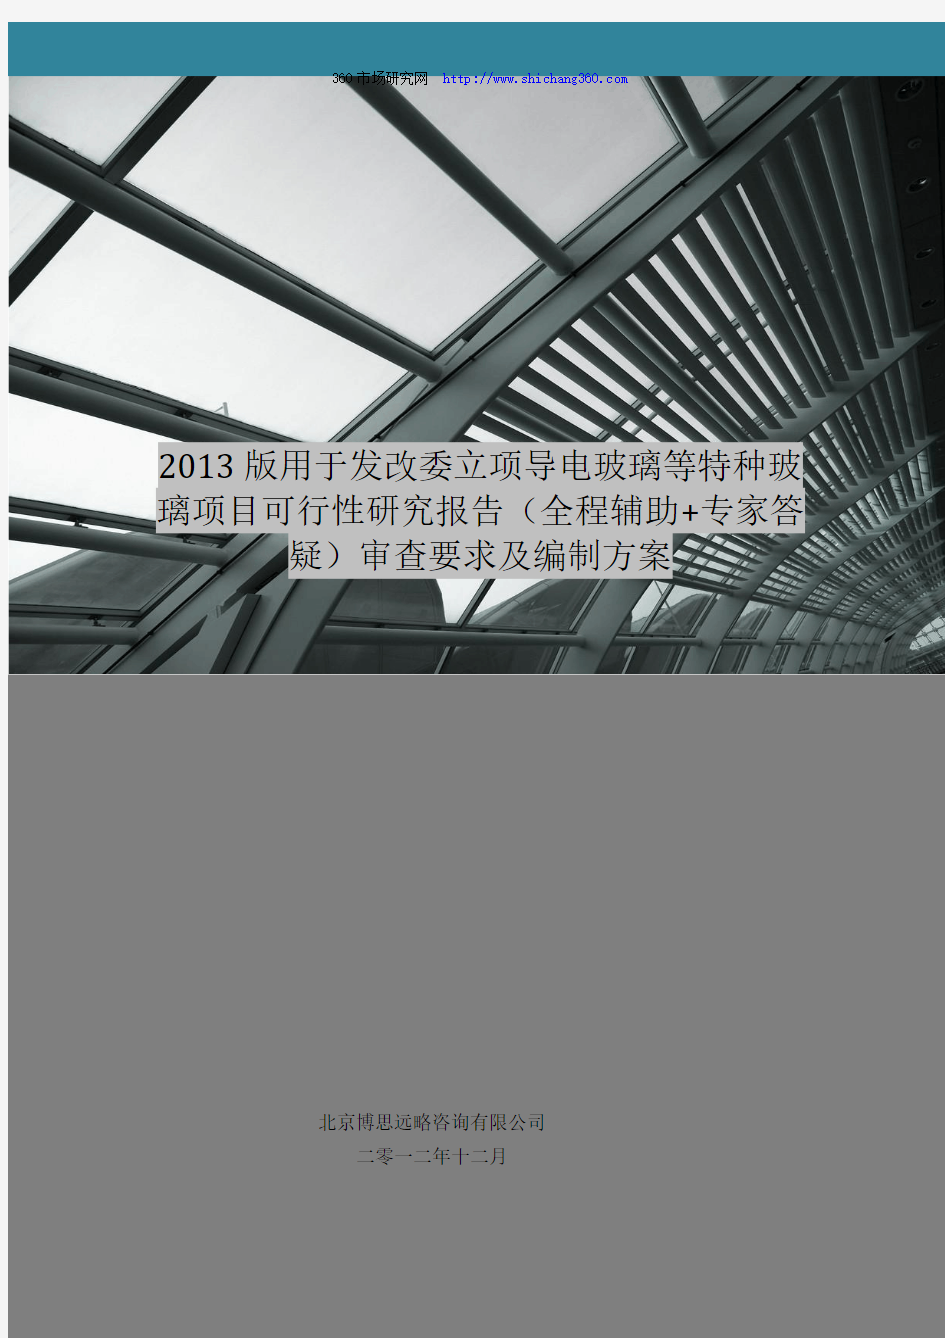 2013版用于立项导电玻璃等特种玻璃项目可行性研究报告(甲级资质)审查要求及编制方案